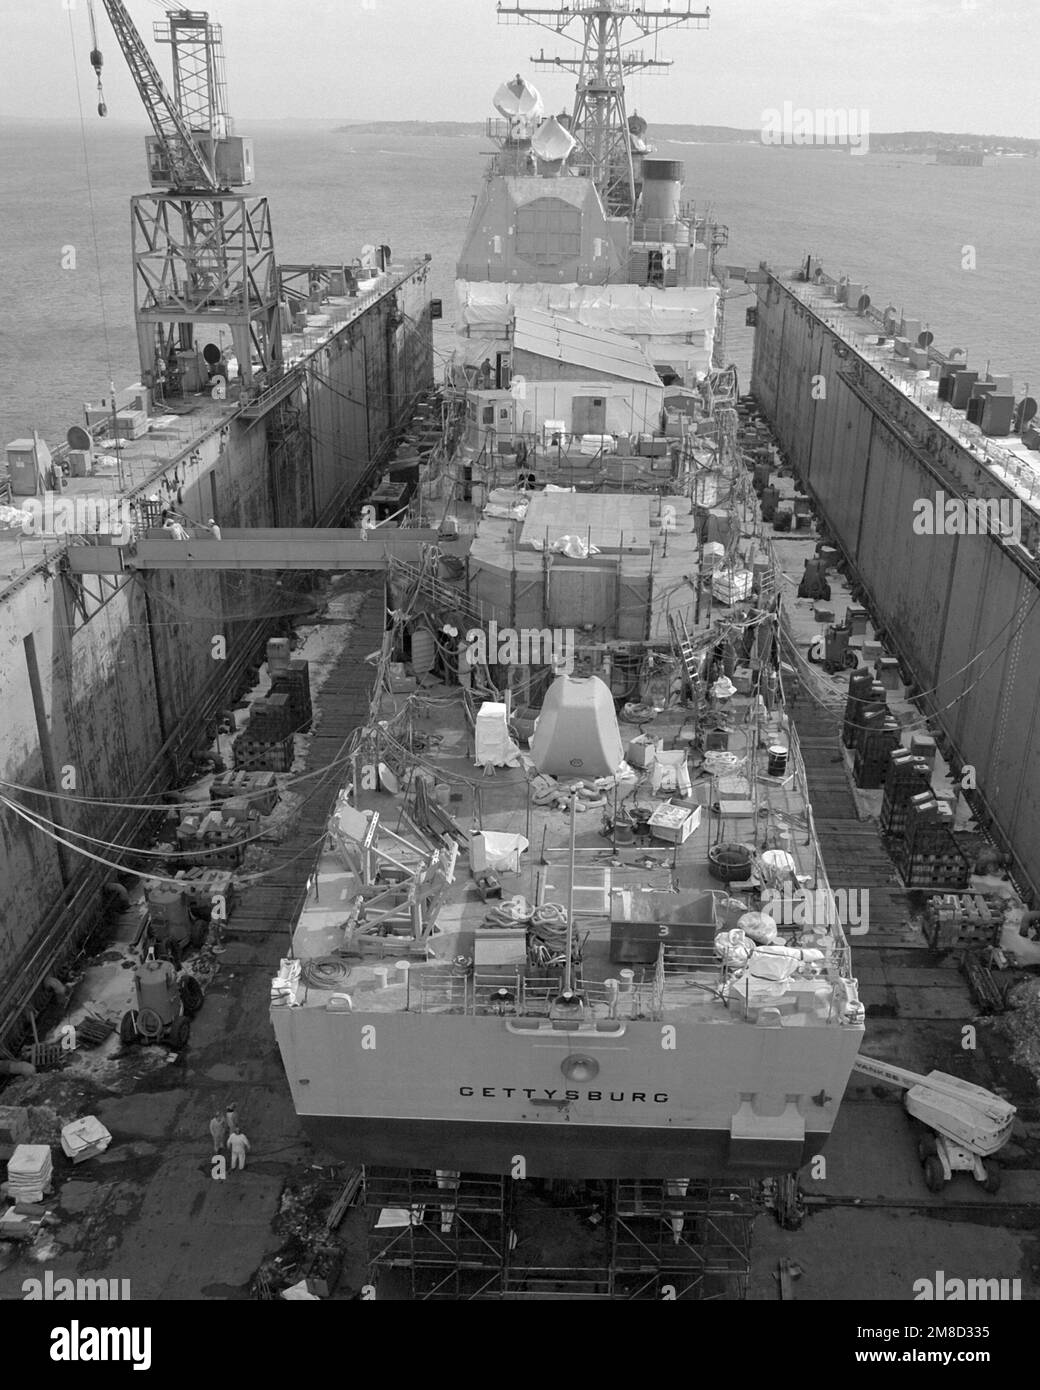 Una vista severa del crucero de misiles guiado GETTYSBURG (CG-64) durante la construcción. El barco está 70 por ciento completo. Base: Bath Estado: Maine (ME) País: United States of America (USA) Foto de stock